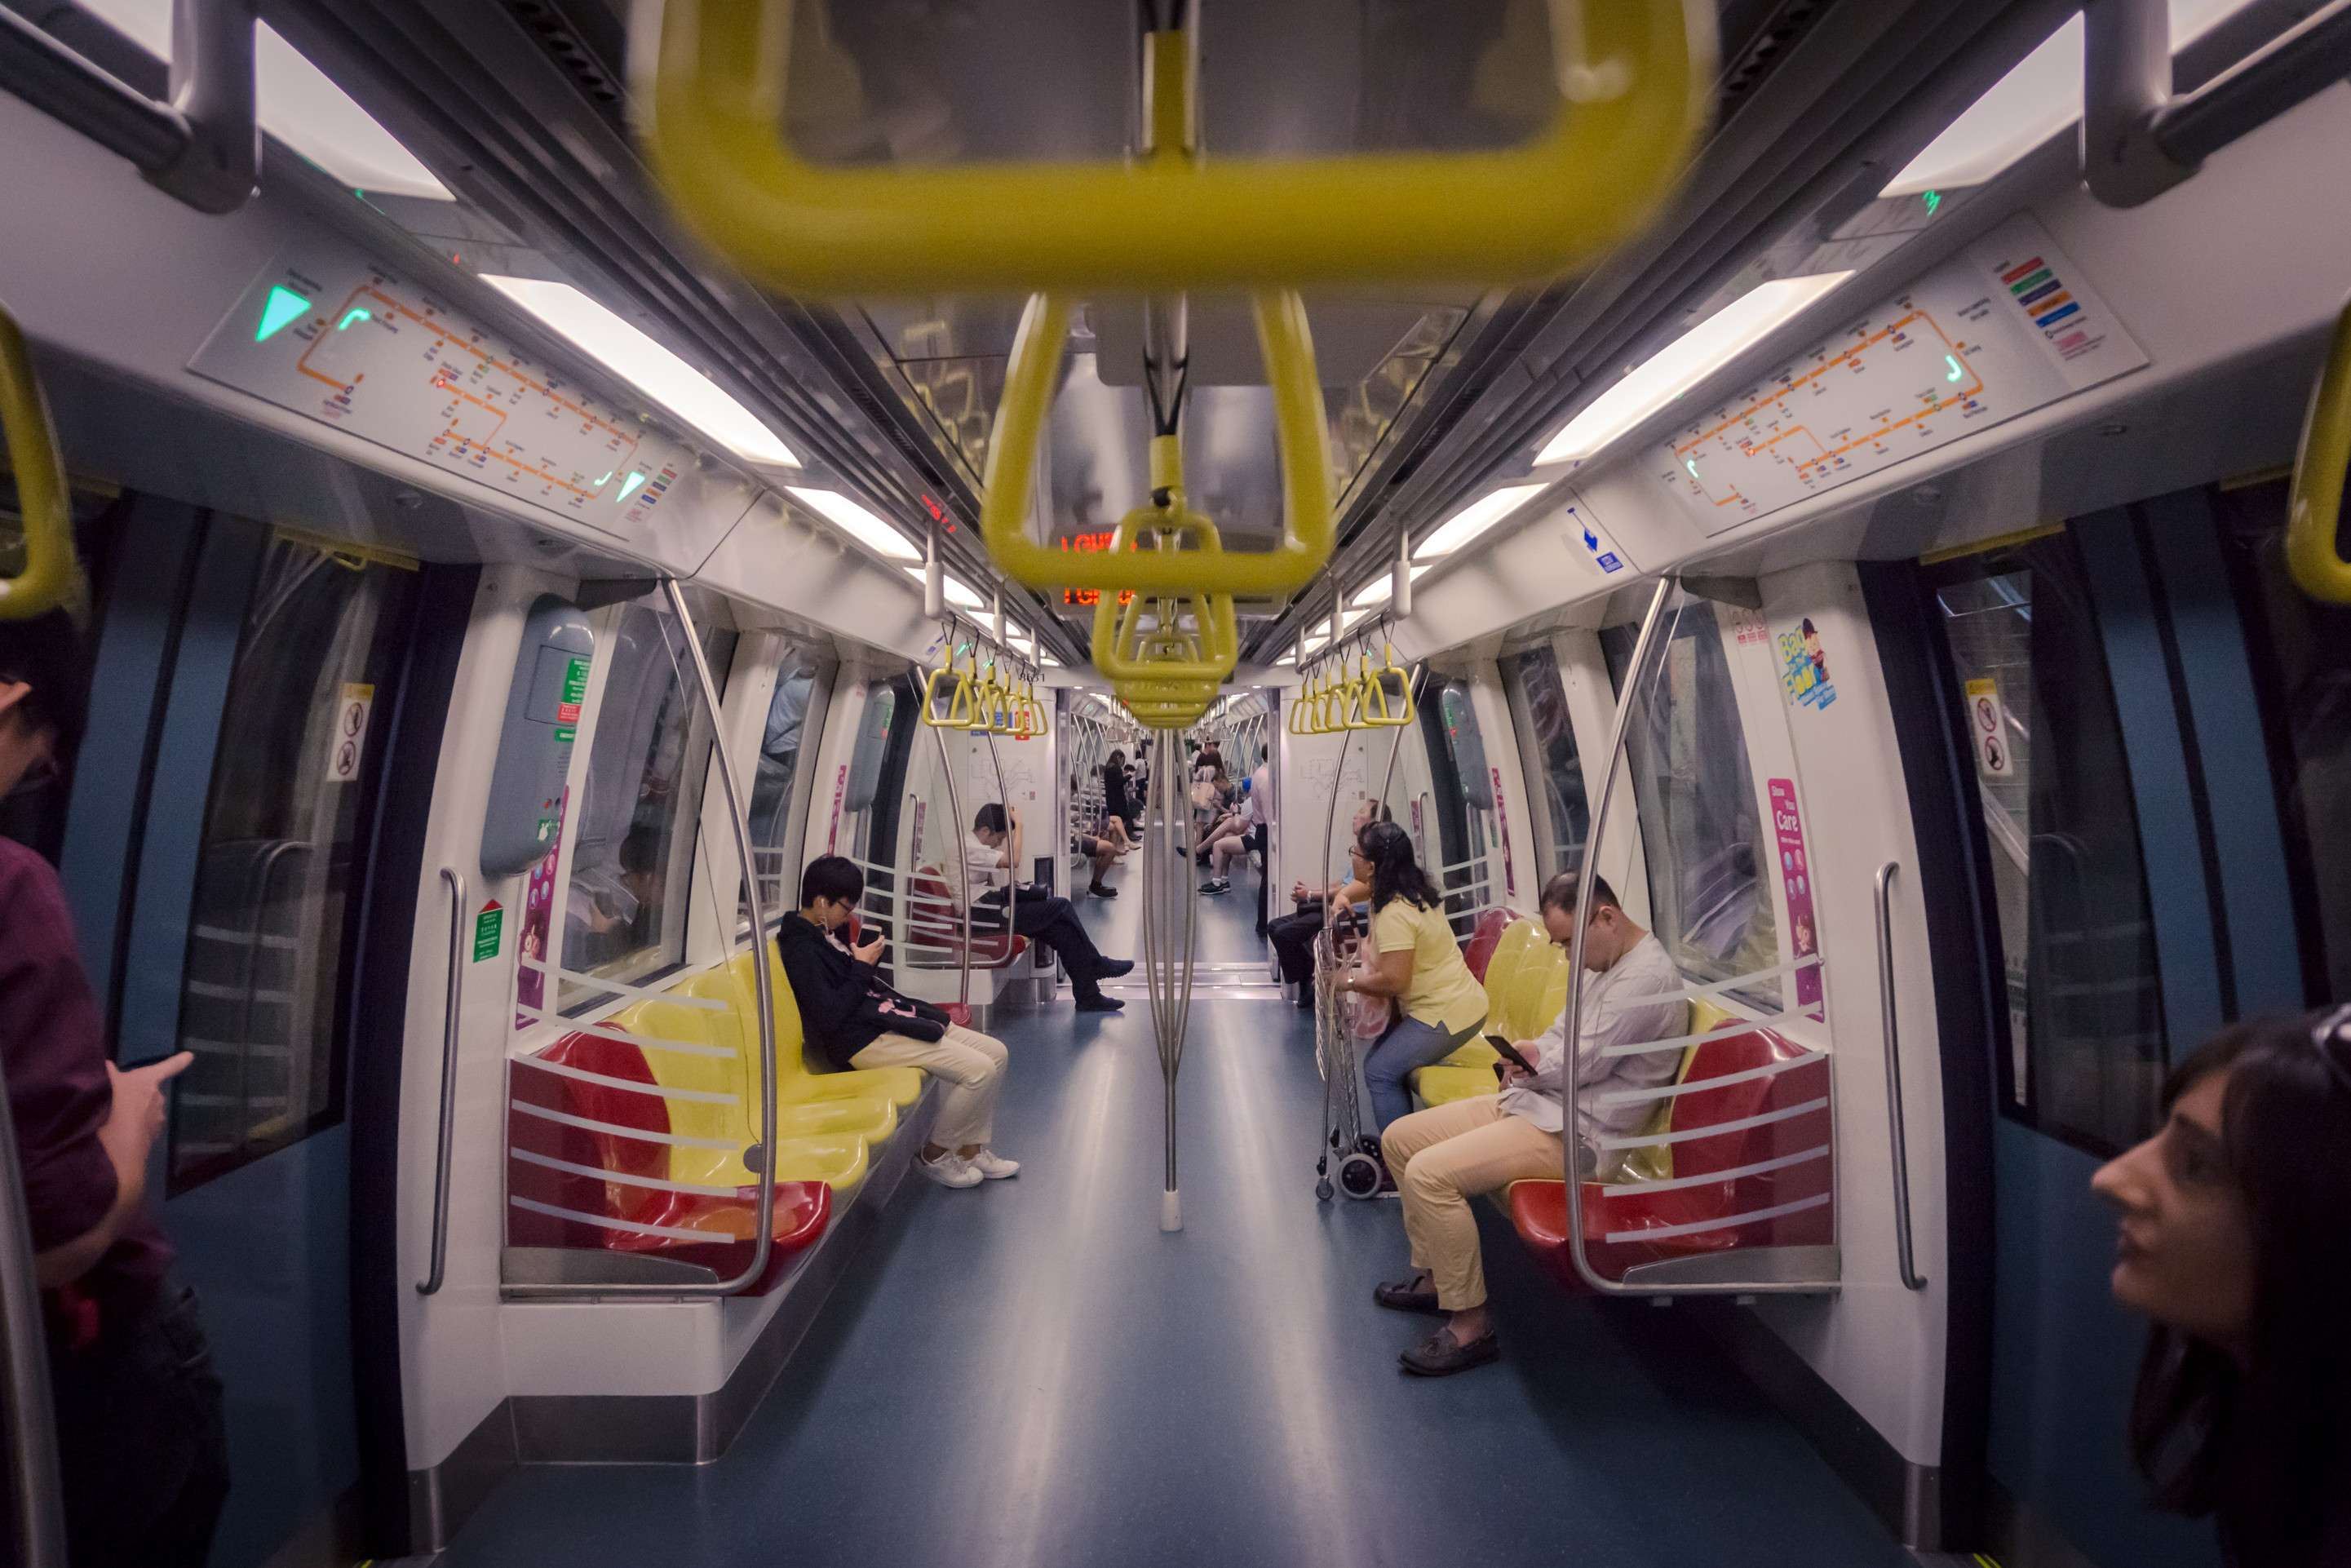 Singapore's efficient MRT